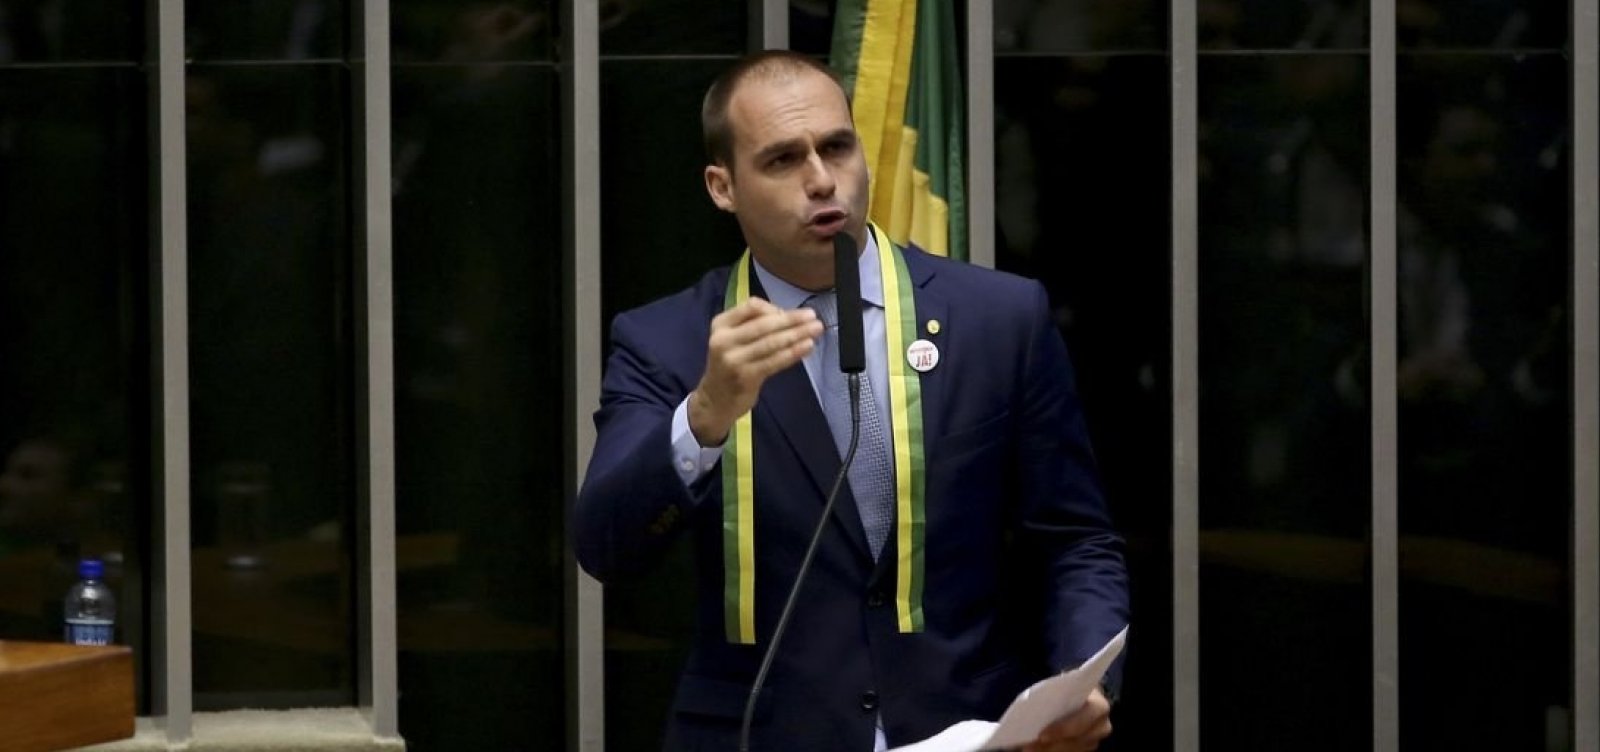 'Se for necessário prender 100 mil, qual o problema?', diz filho de Bolsonaro